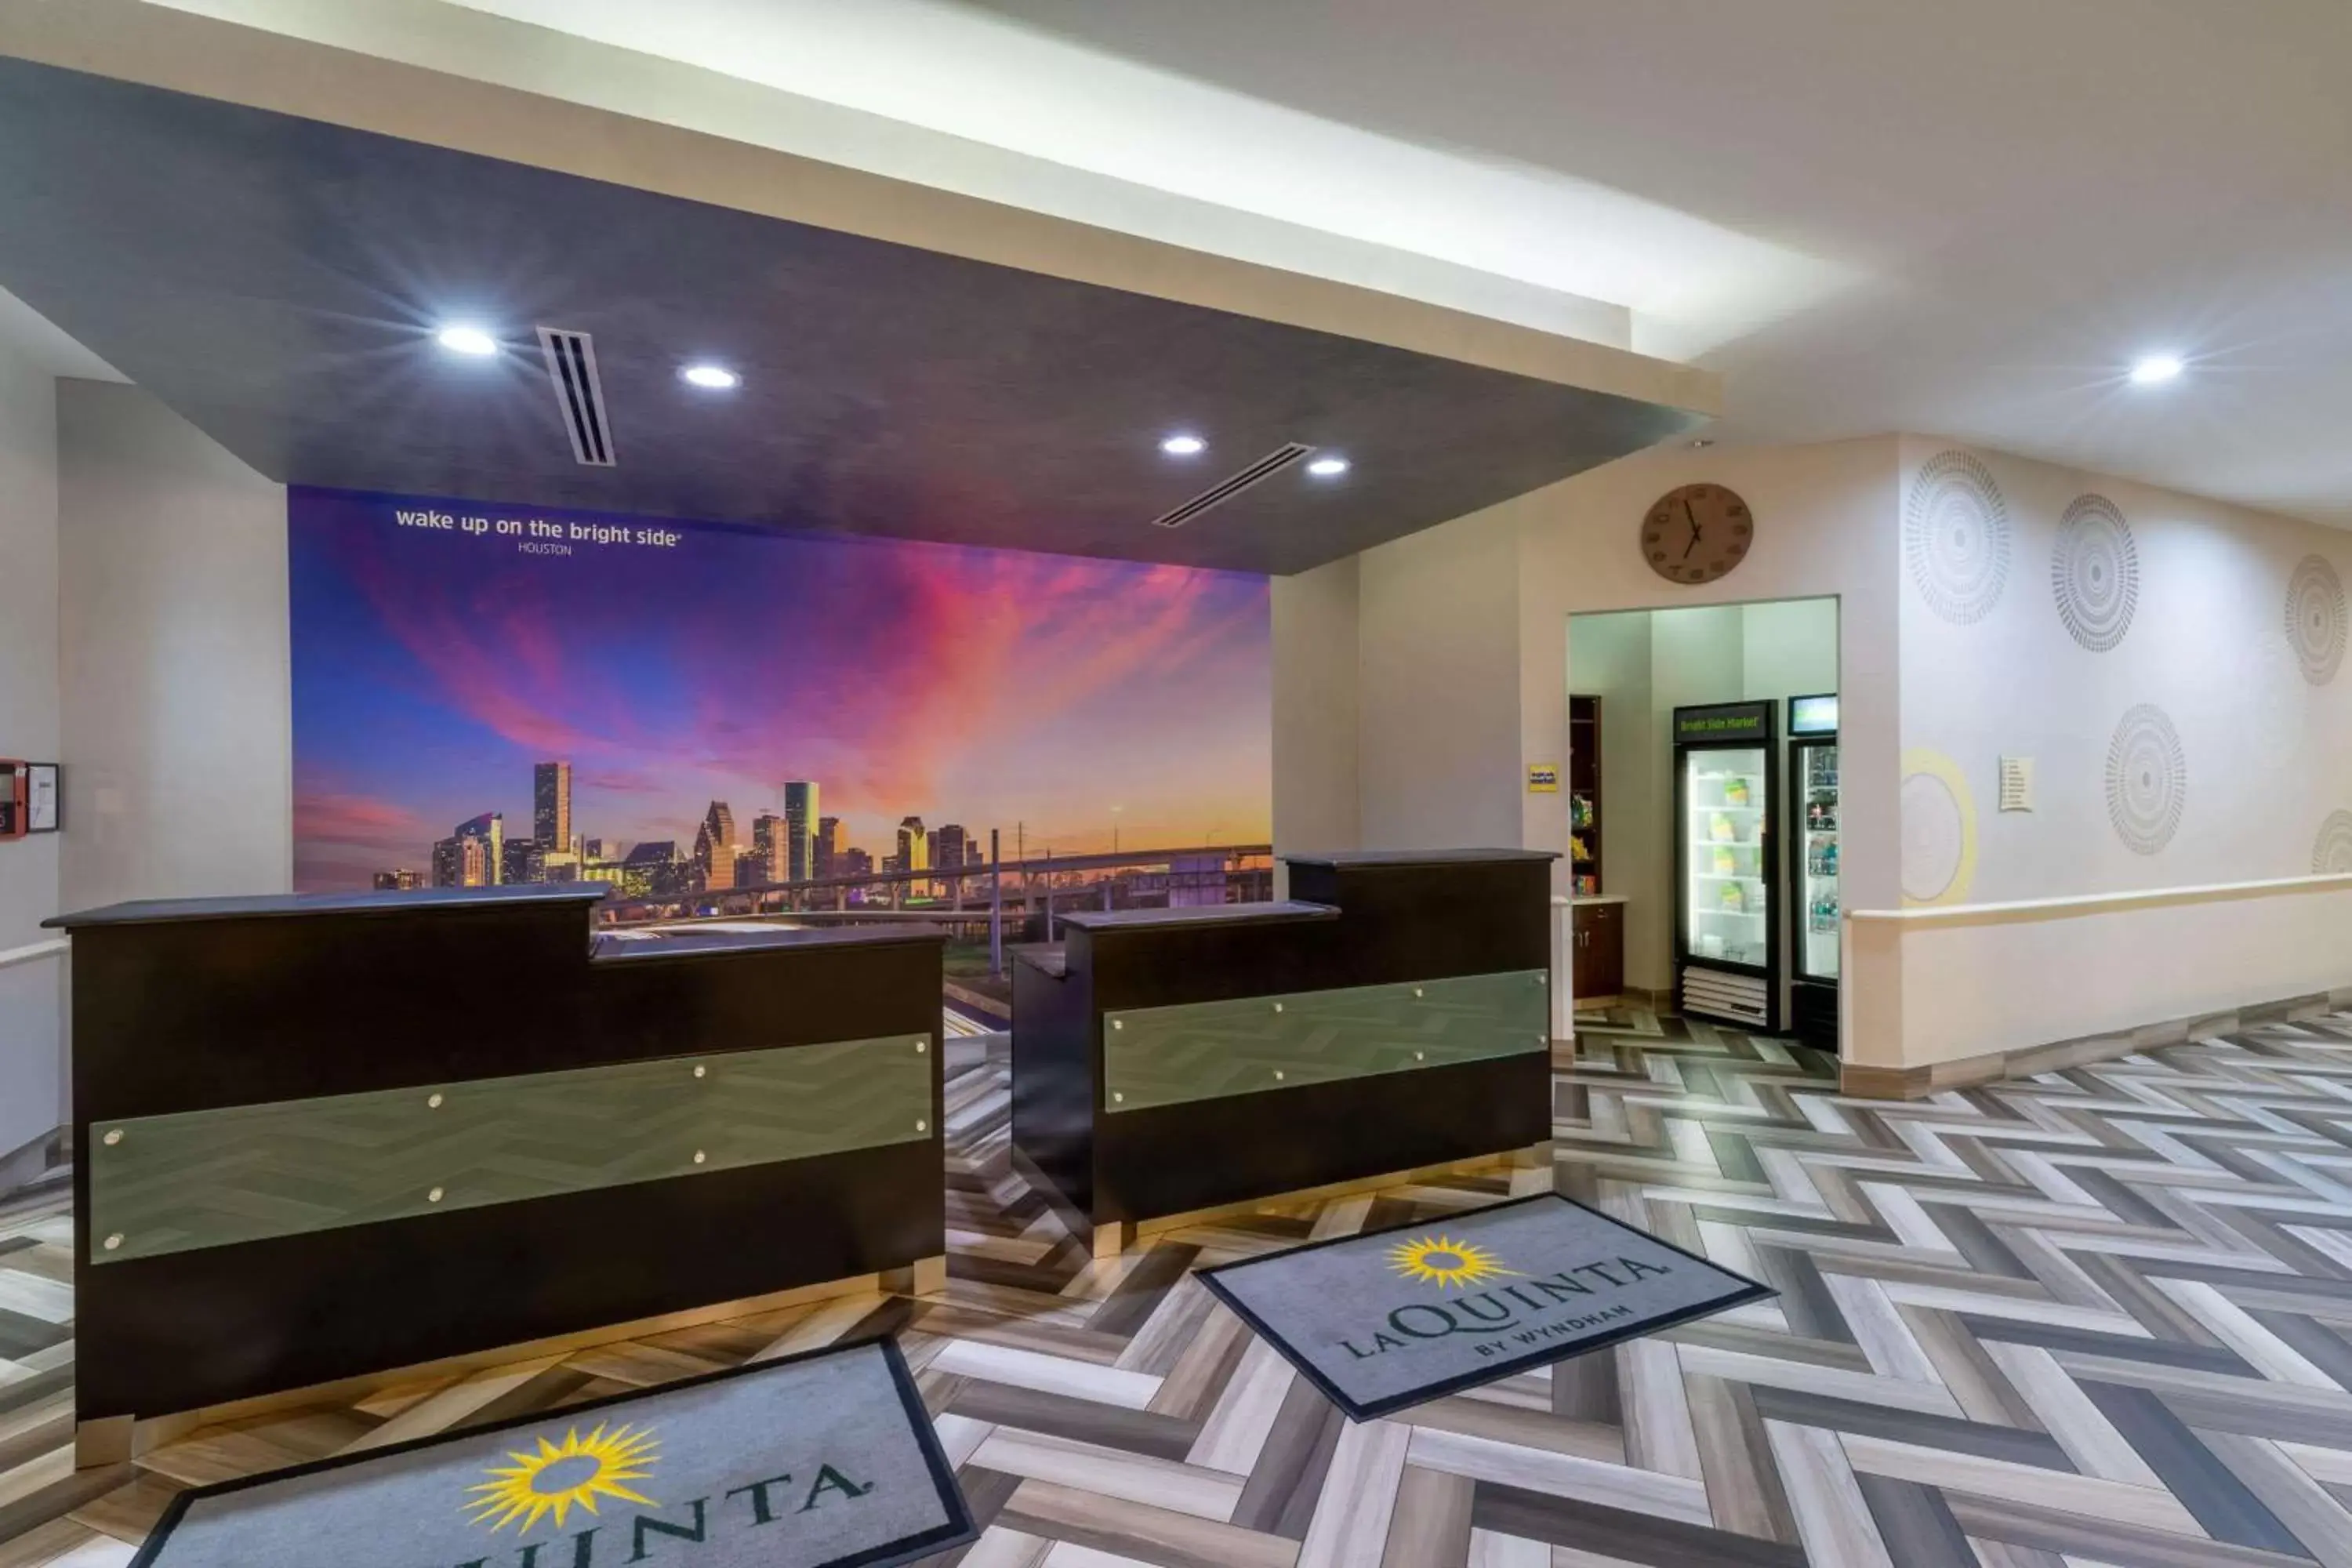 Lobby or reception in La Quinta by Wyndham Houston NW Beltway8/WestRD